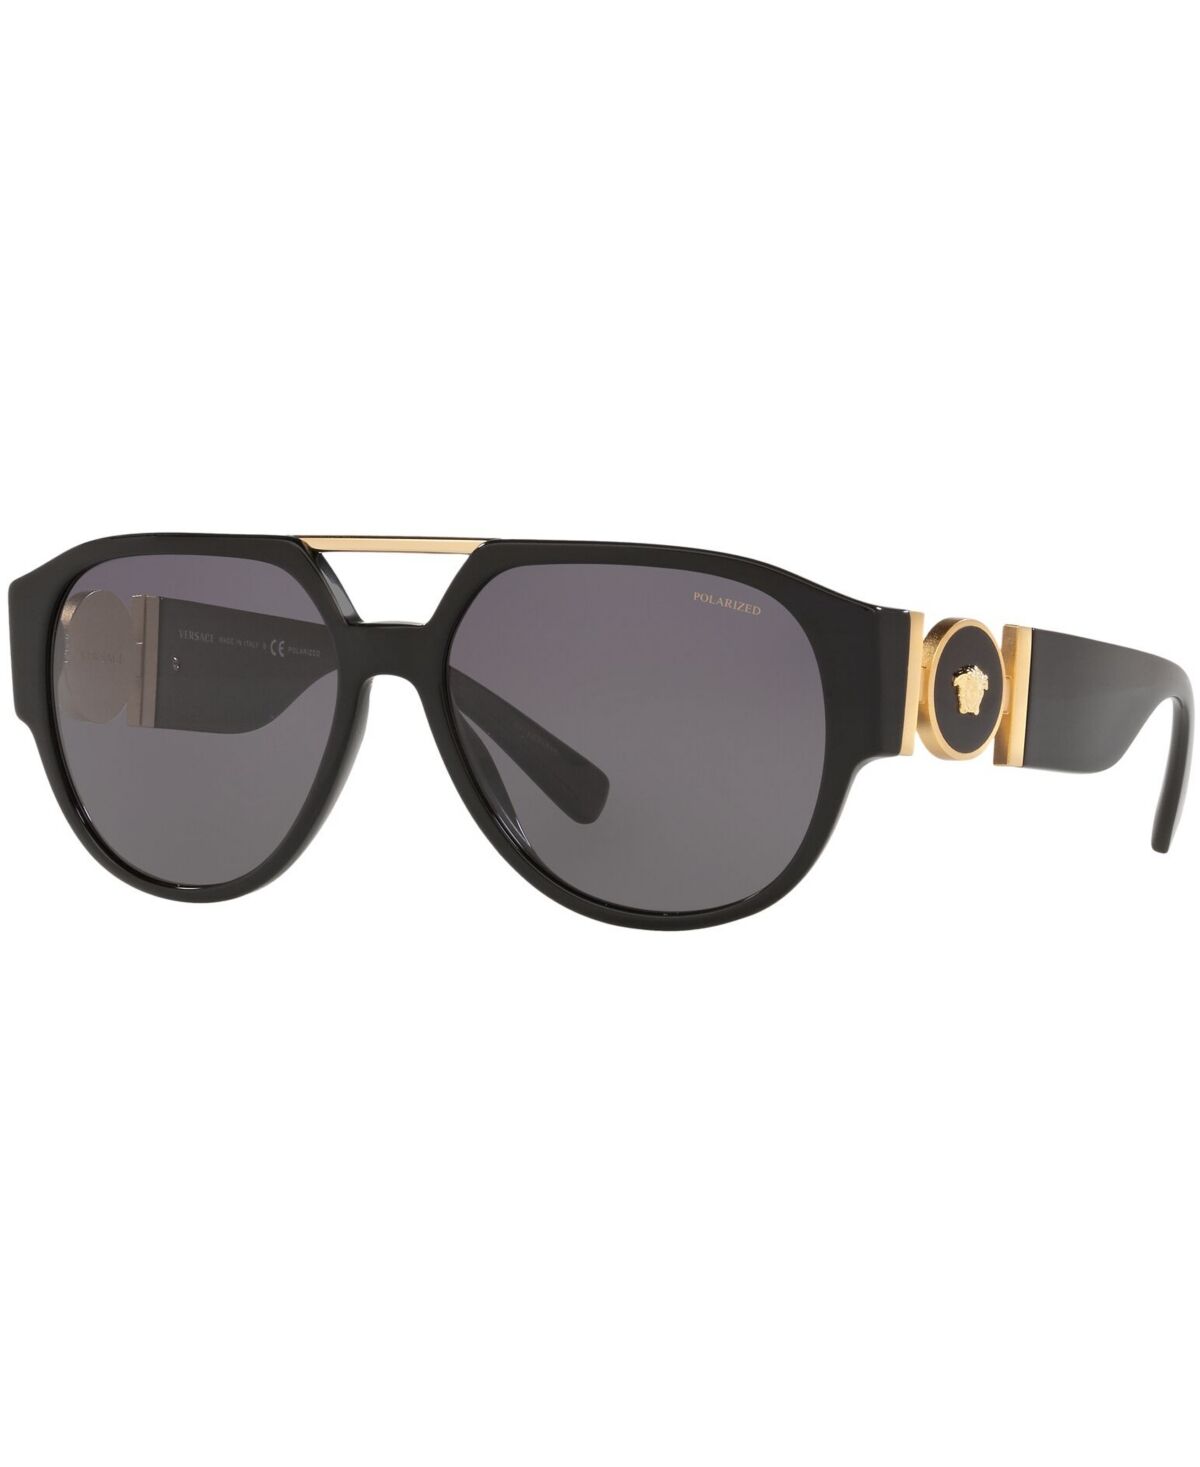 Versace Polarized Sunglasses, Created for Macy's, VE4371 58 - BLACK/POLAR GREY